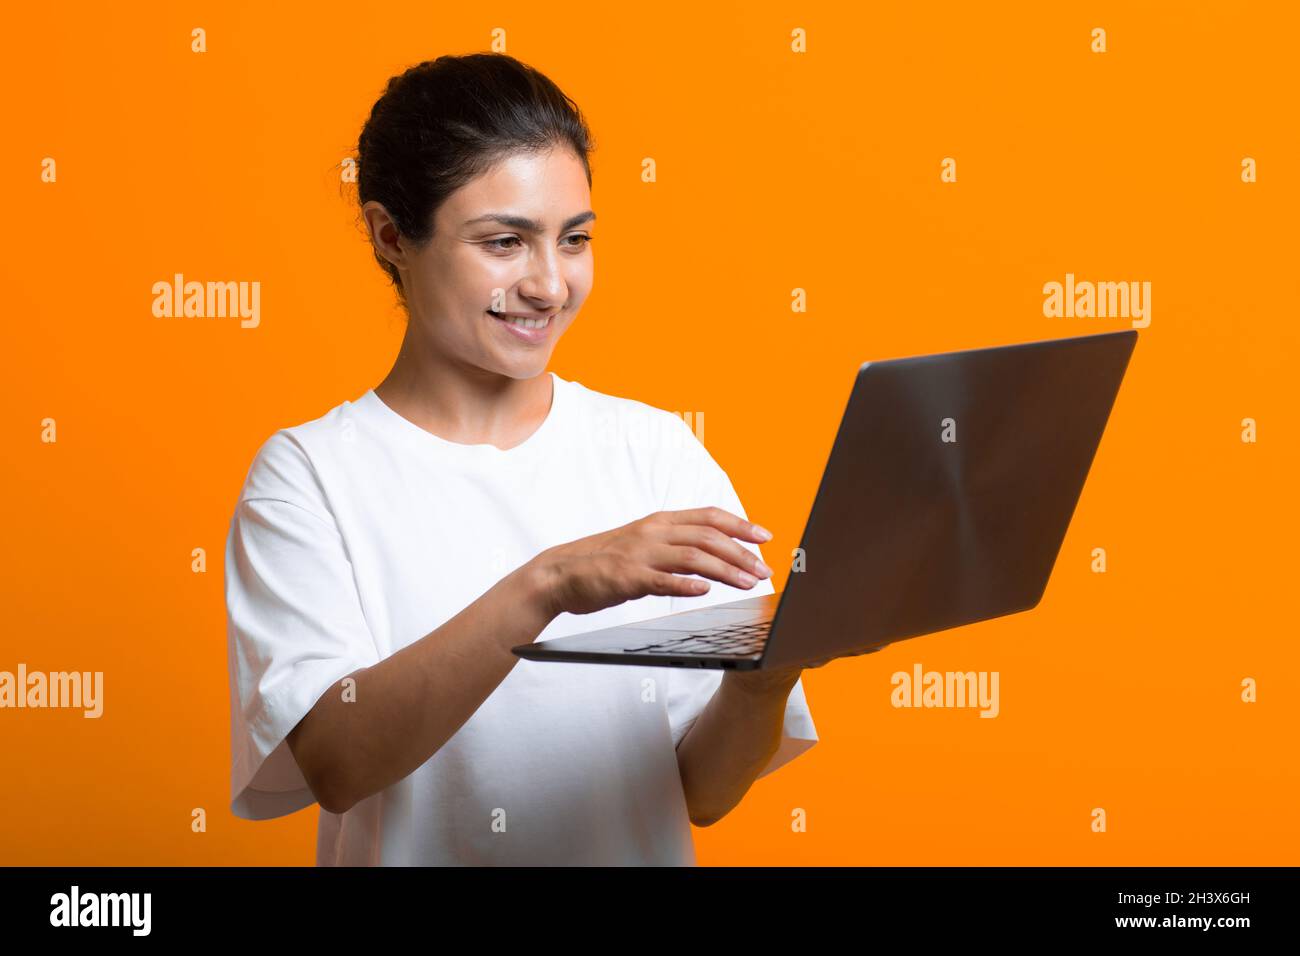 Ritratto di giovane donna indiana sorridente adulto che lavora con un computer portatile. Foto Stock